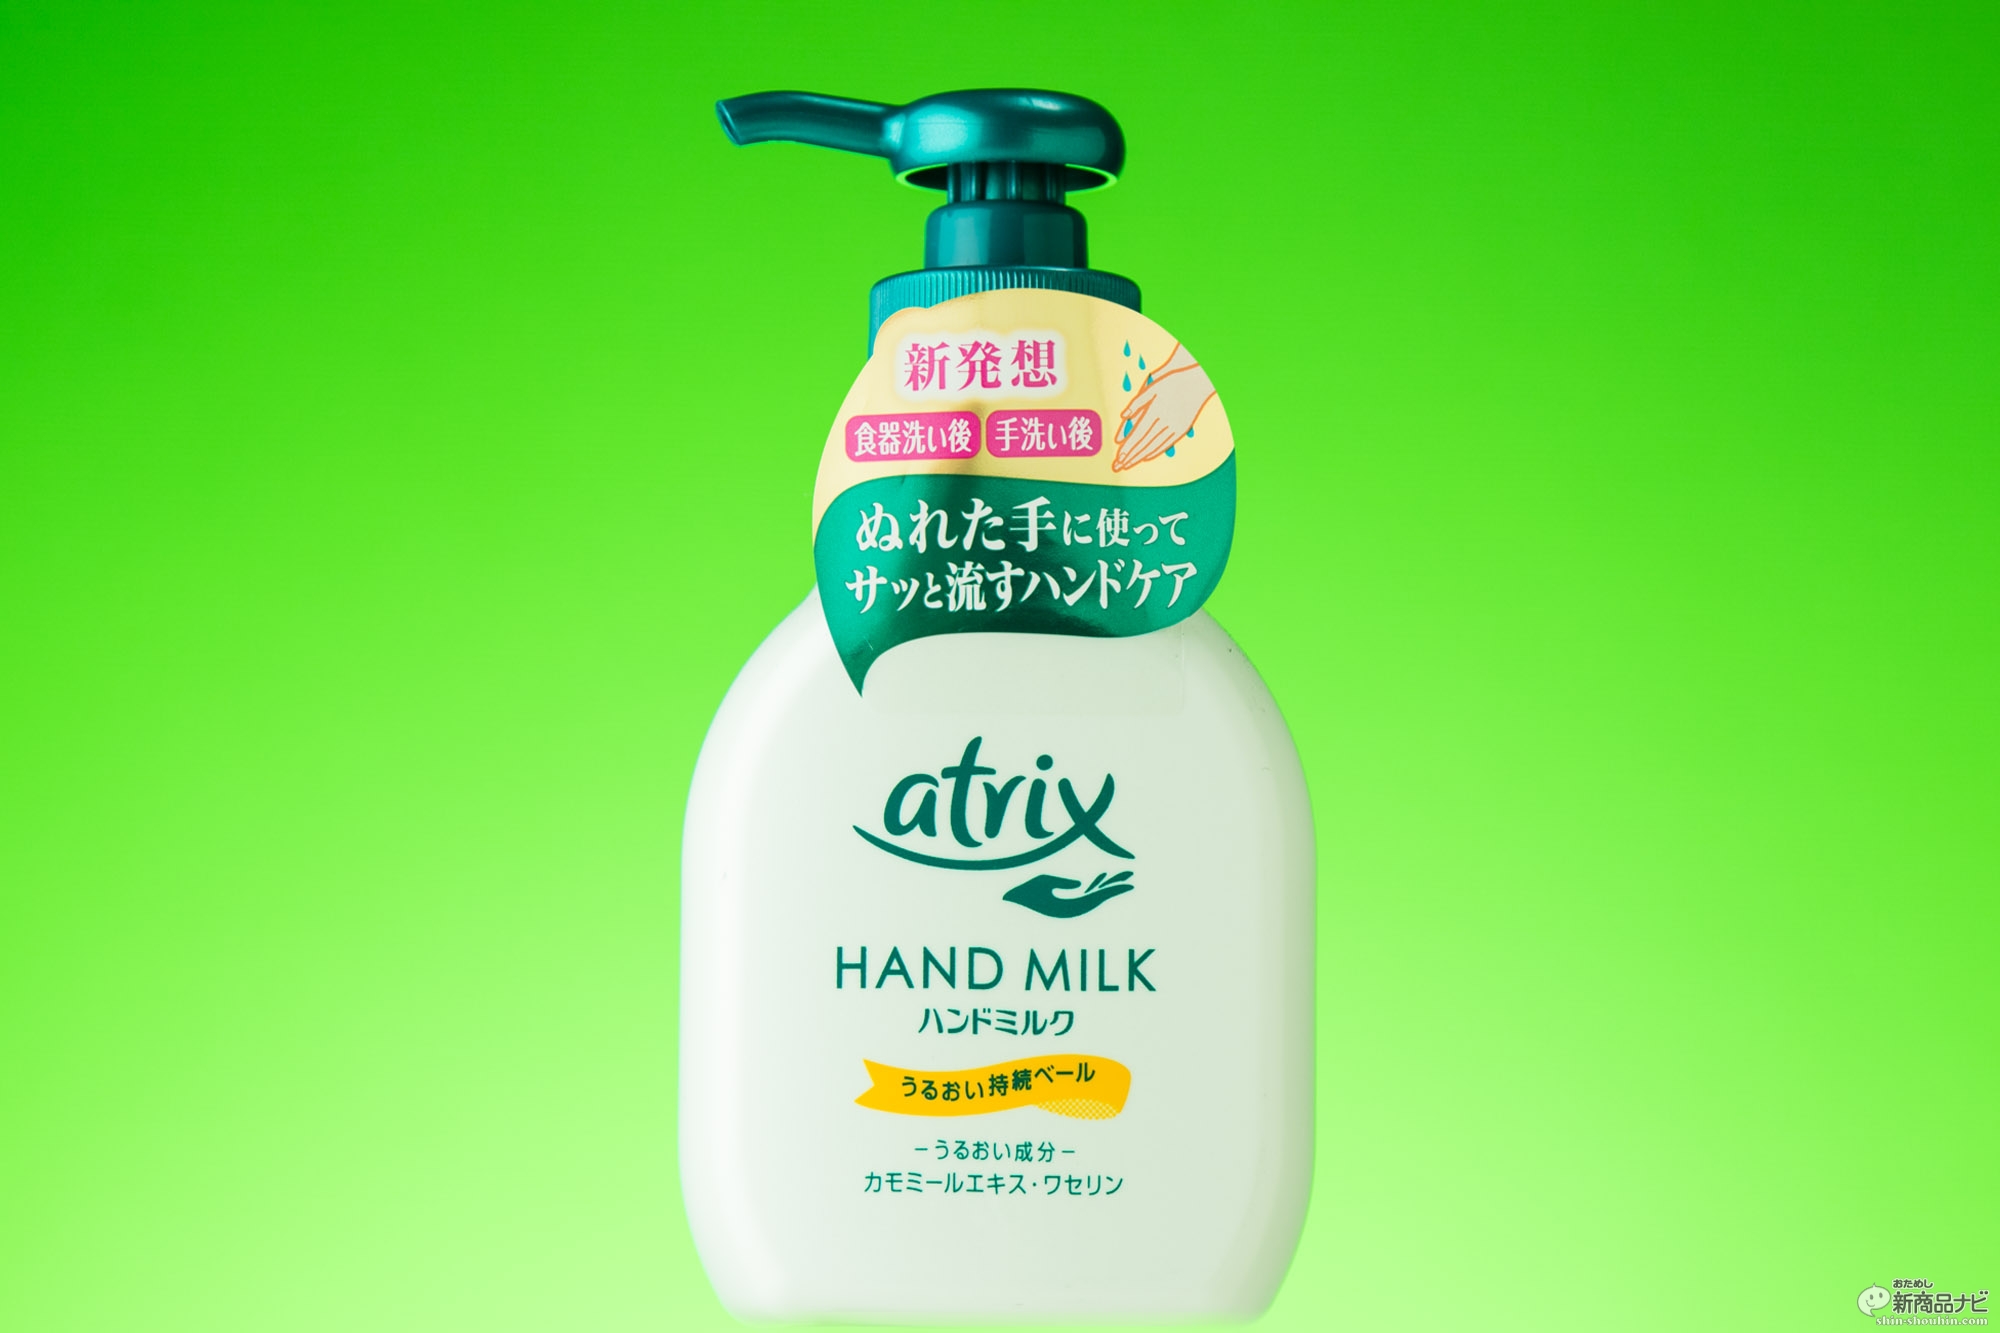 おためし新商品ナビ Blog Archive アトリックス ハンドミルク 食器洗い後の濡れた手に使ってそのまま洗い流す新発想ハンドケアに感動